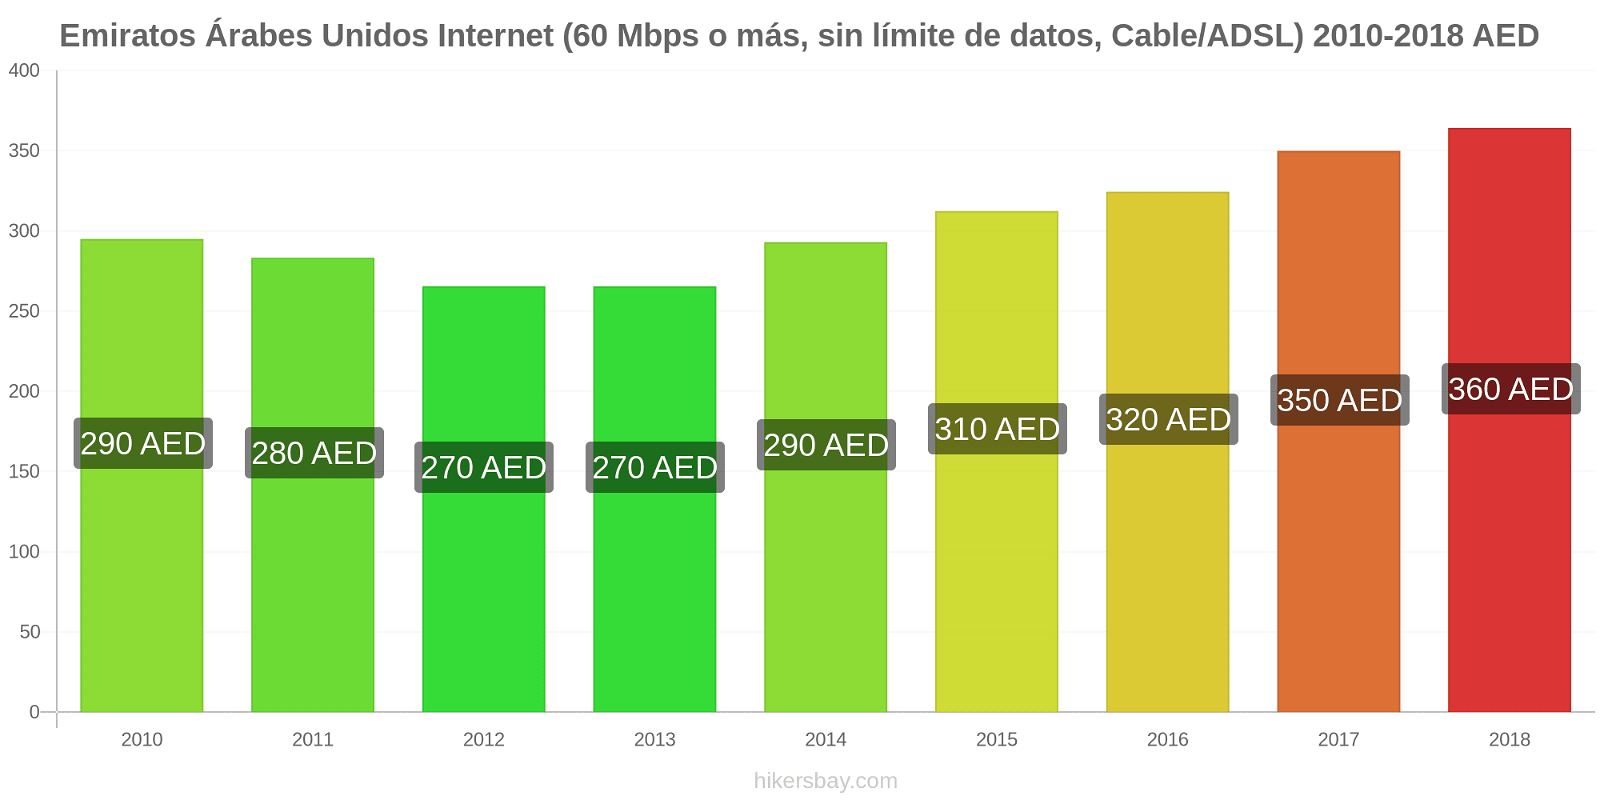 Emiratos Árabes Unidos cambios de precios Internet (60 Mbps o más, datos ilimitados, cable/ADSL) hikersbay.com